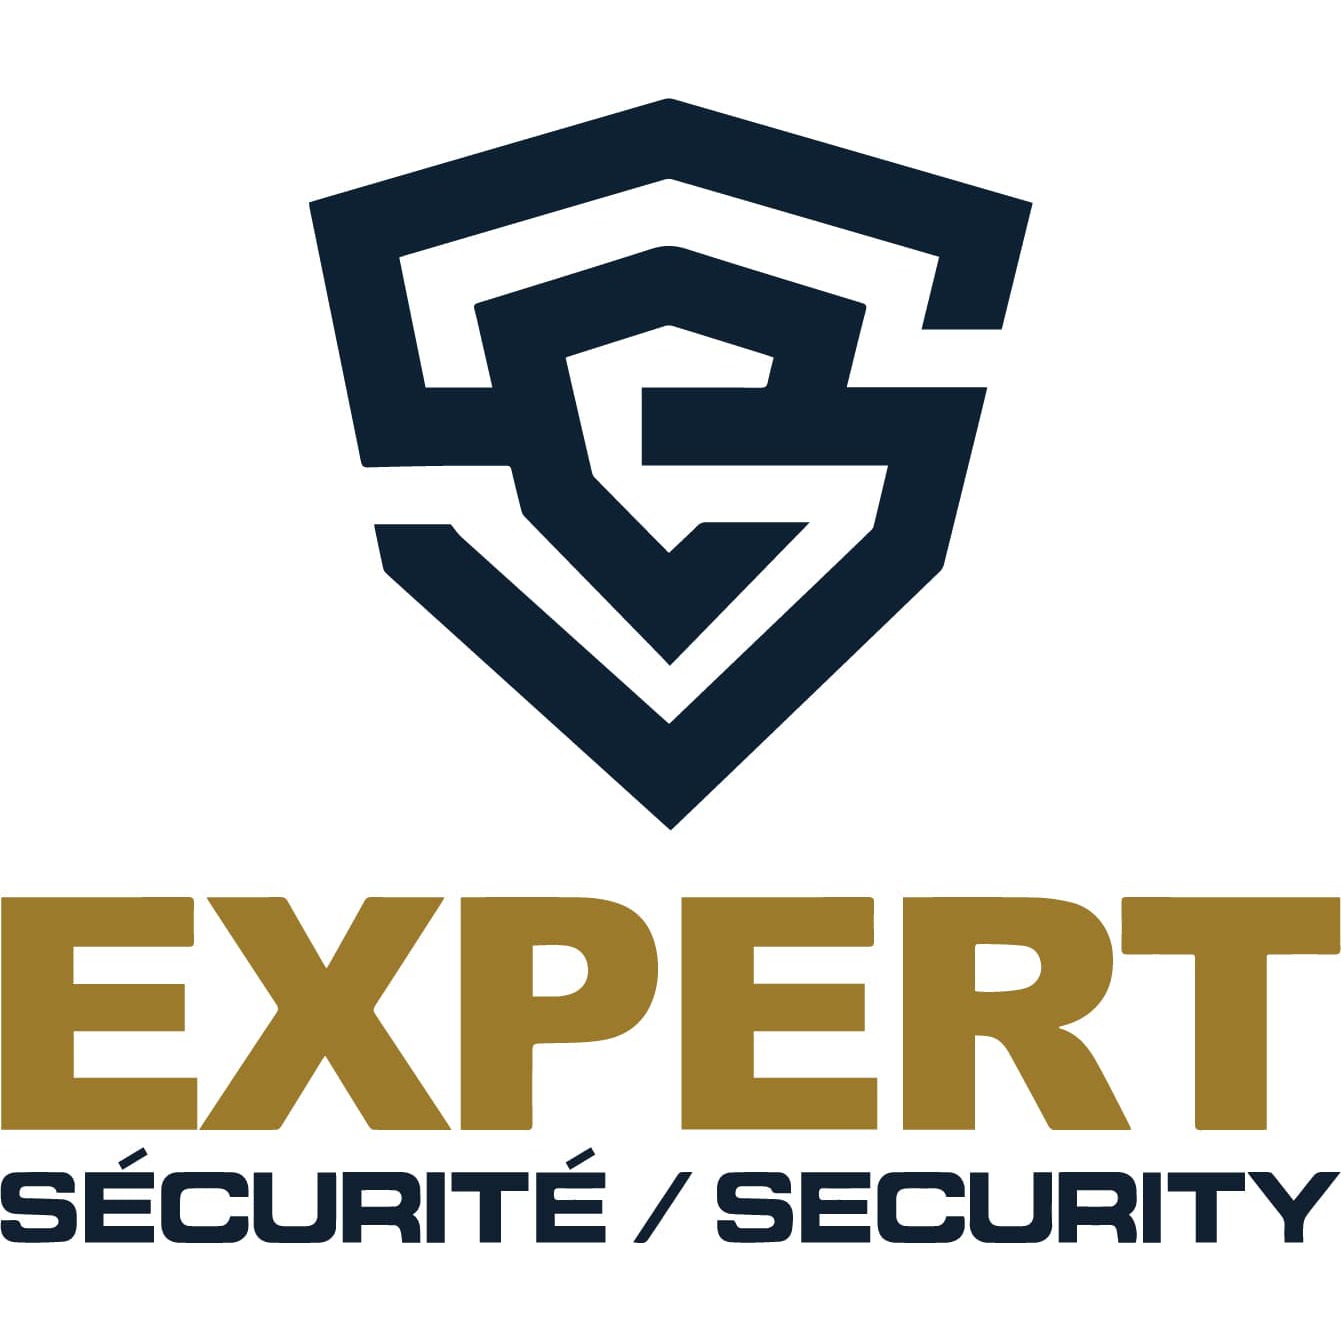 Expert Security Dieppe (506)878-3330